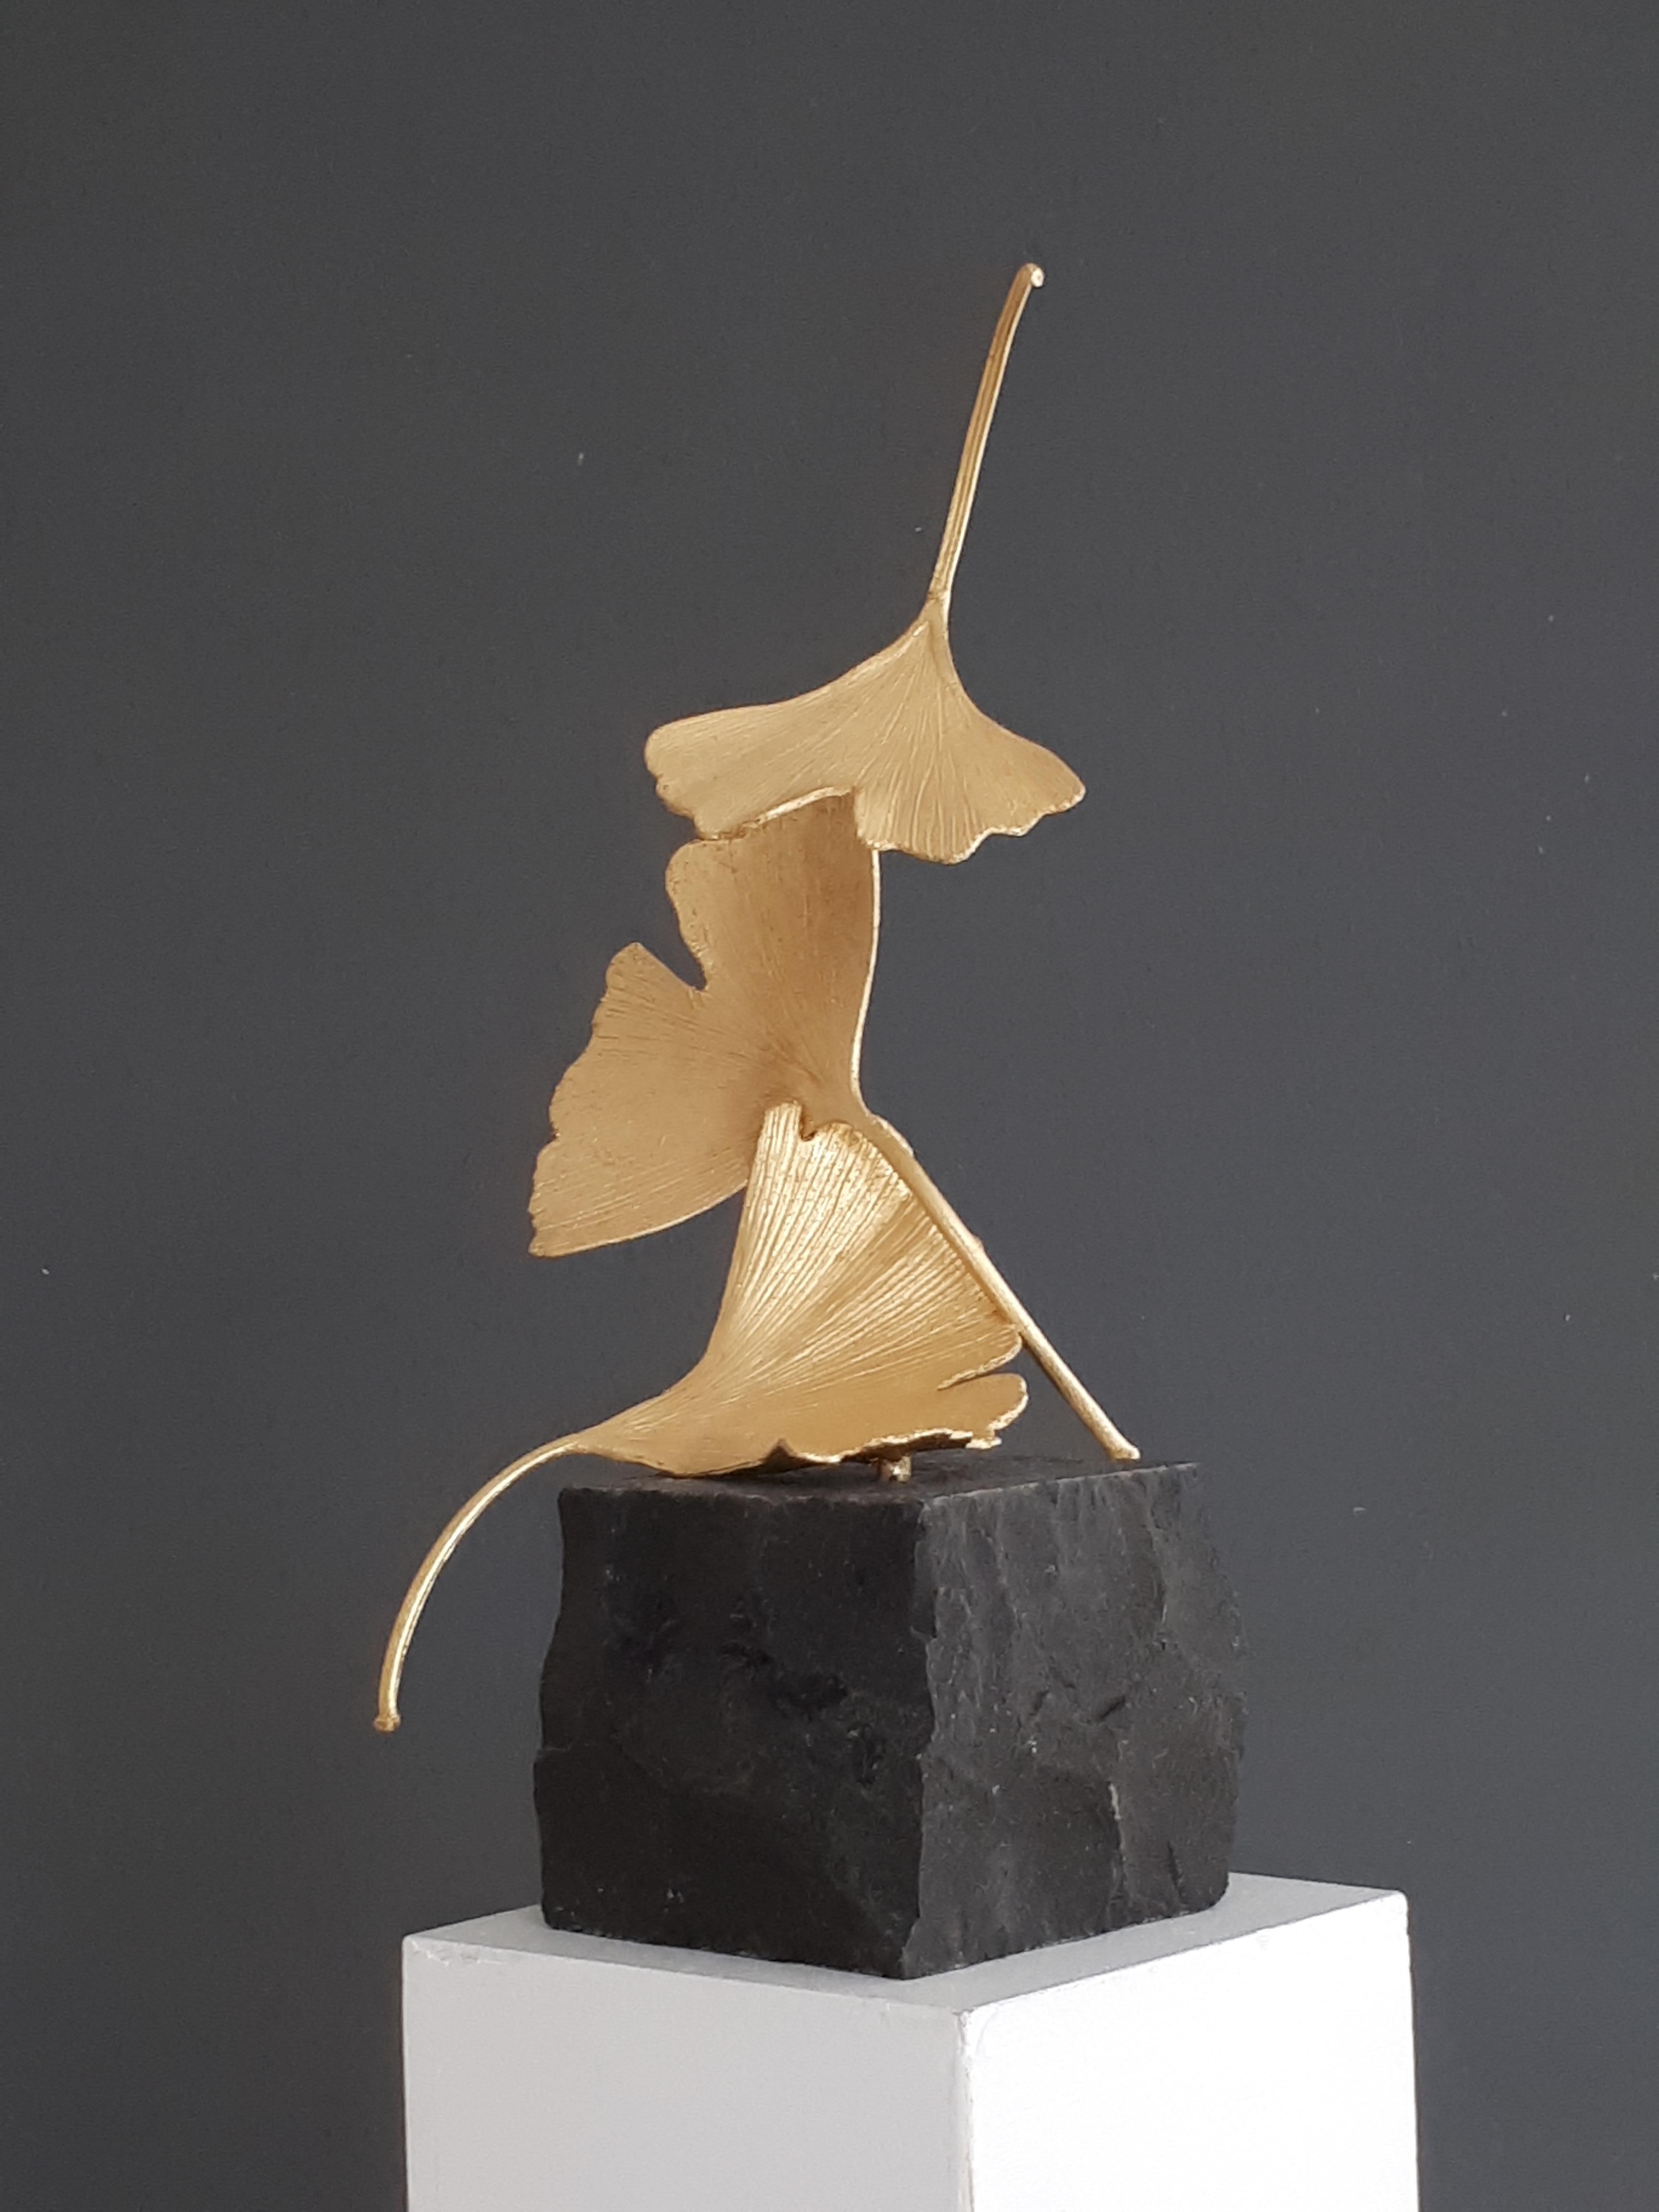 Golden Gingko by Kuno Vollet - Cast Brass gilded sculpture on black granite base For Sale 2